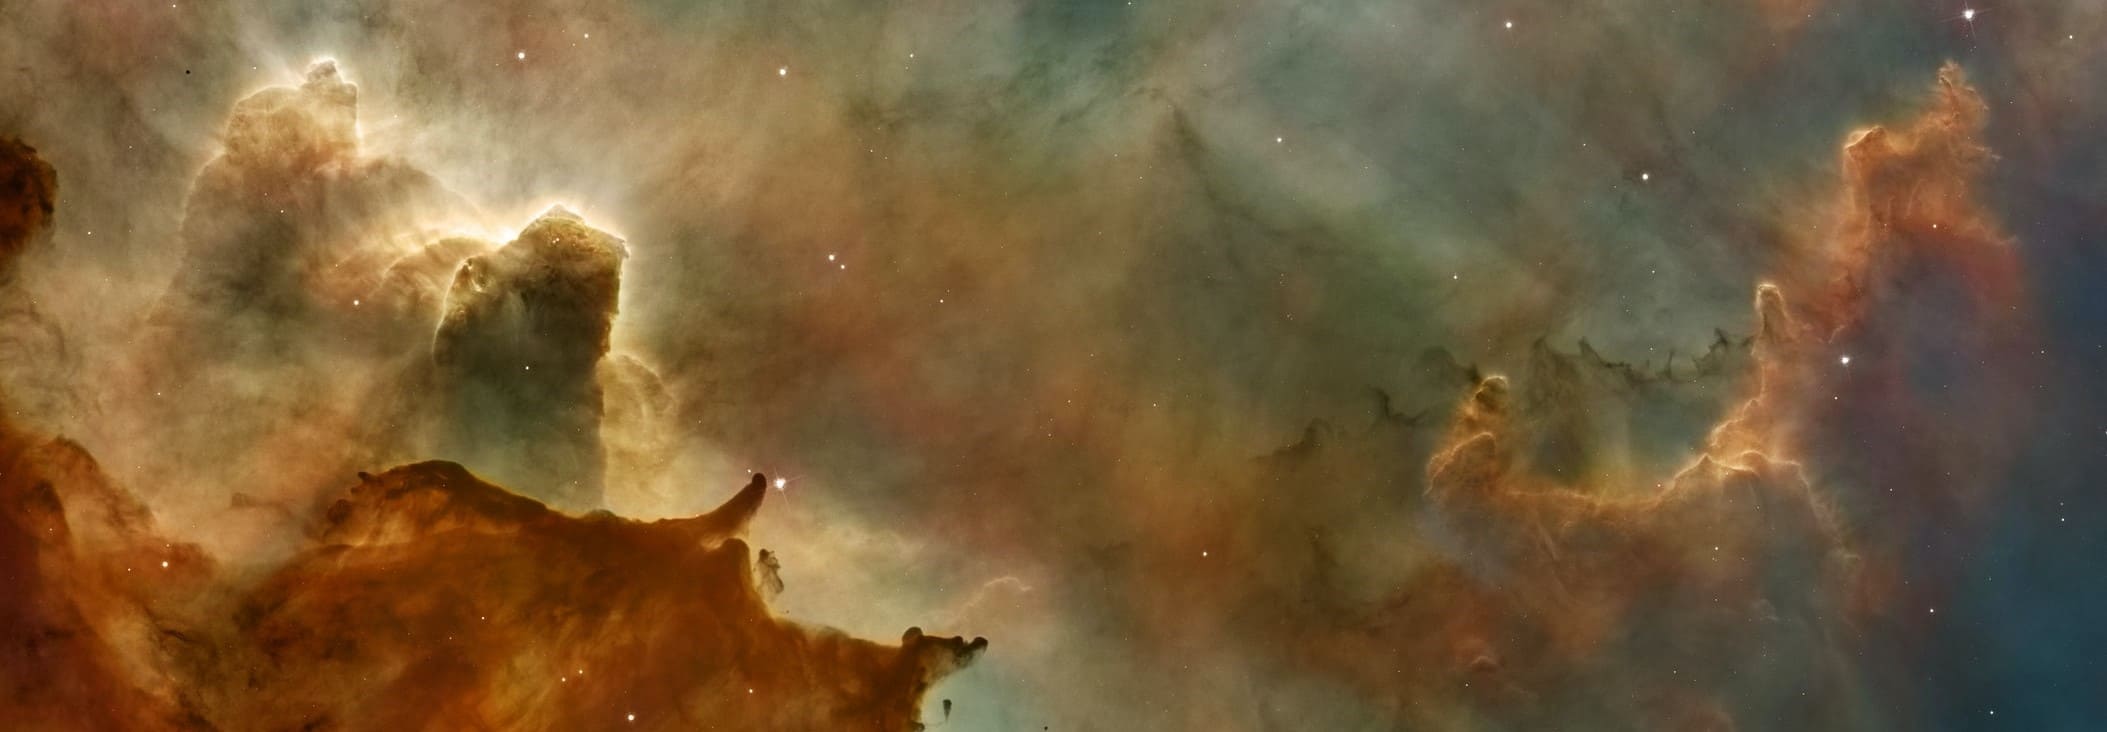 Ahmed Shahirar Sakib Cover - Carina Nebula